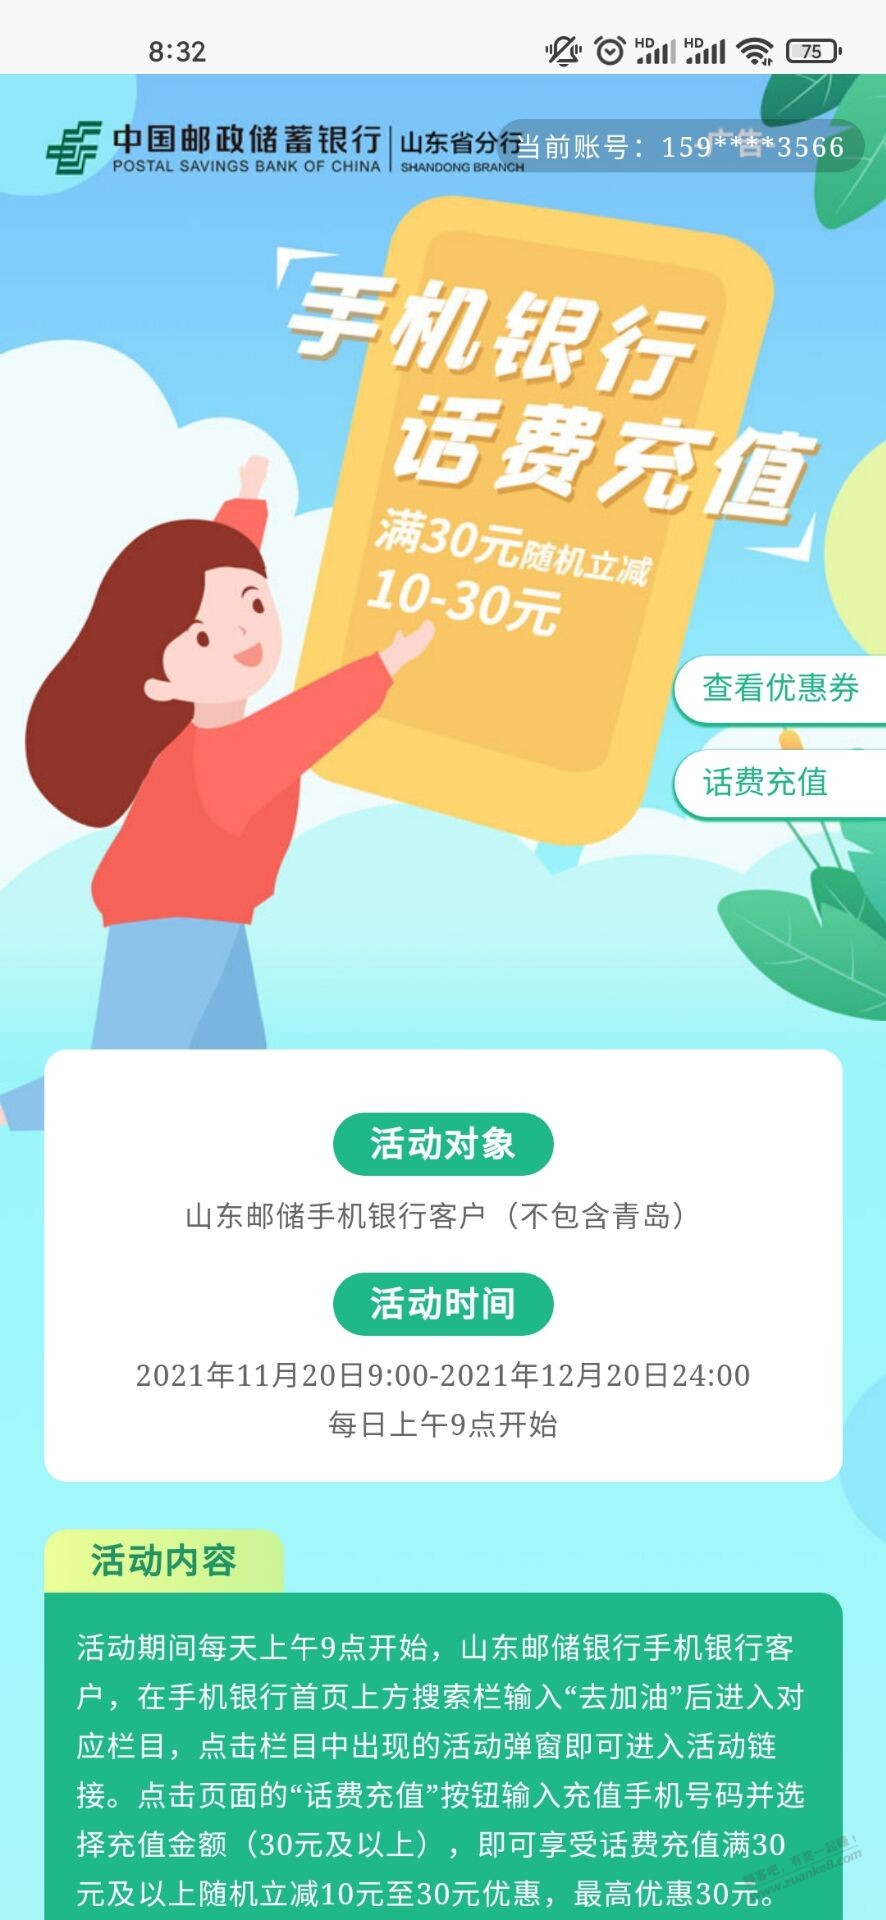 山东邮储app-不含青岛-每天9点-话费大毛-一次毕业。-惠小助(52huixz.com)